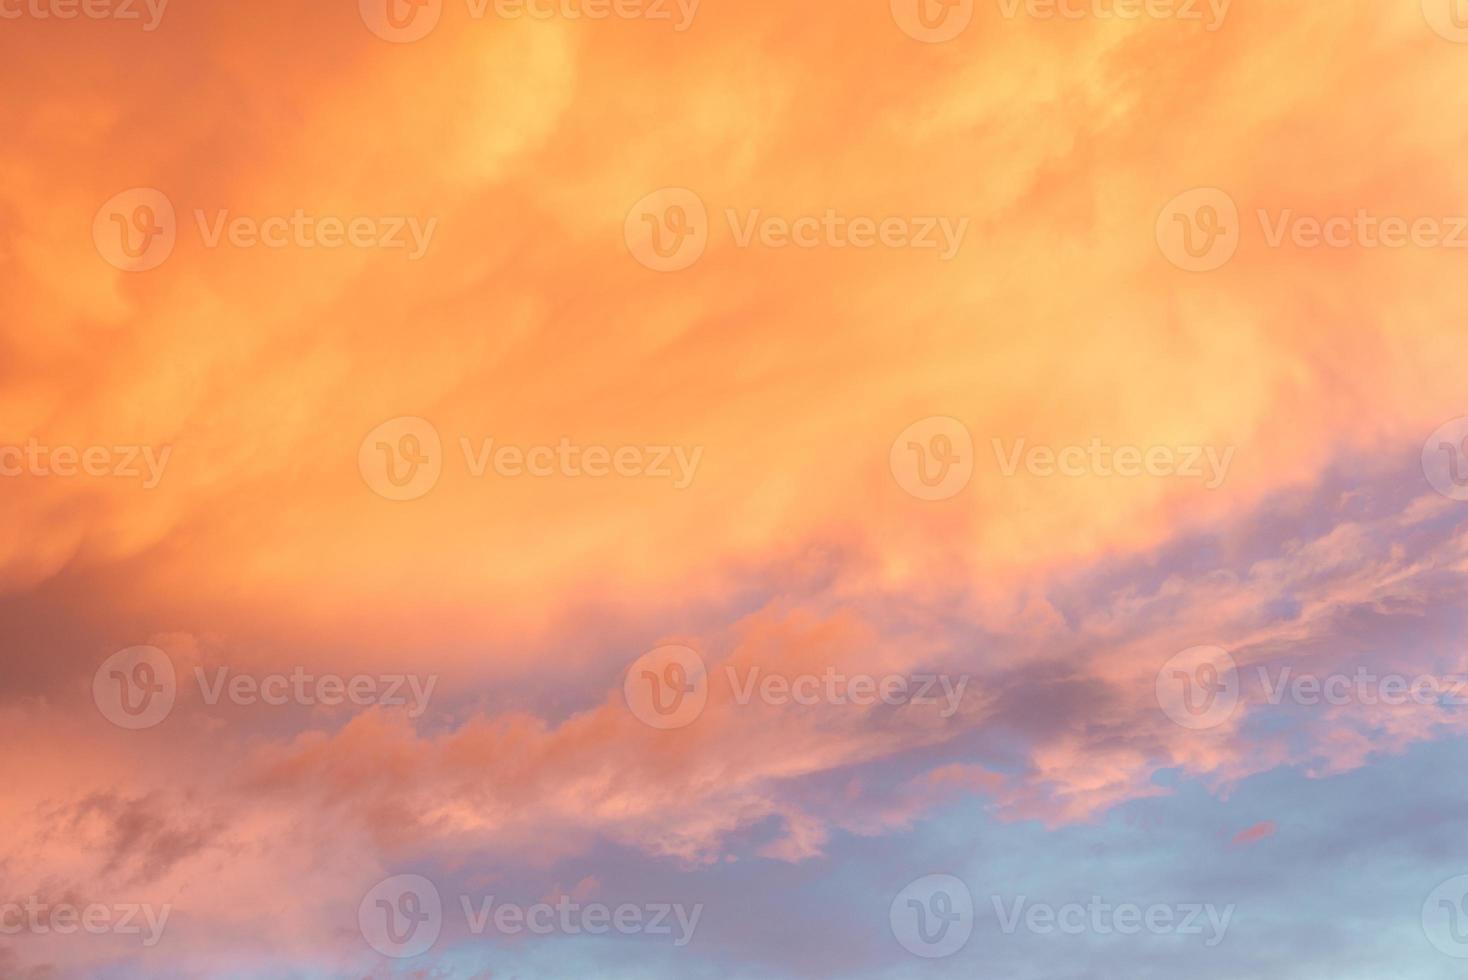 mooie zomerse zonsondergang met oranje lucht en wolken foto